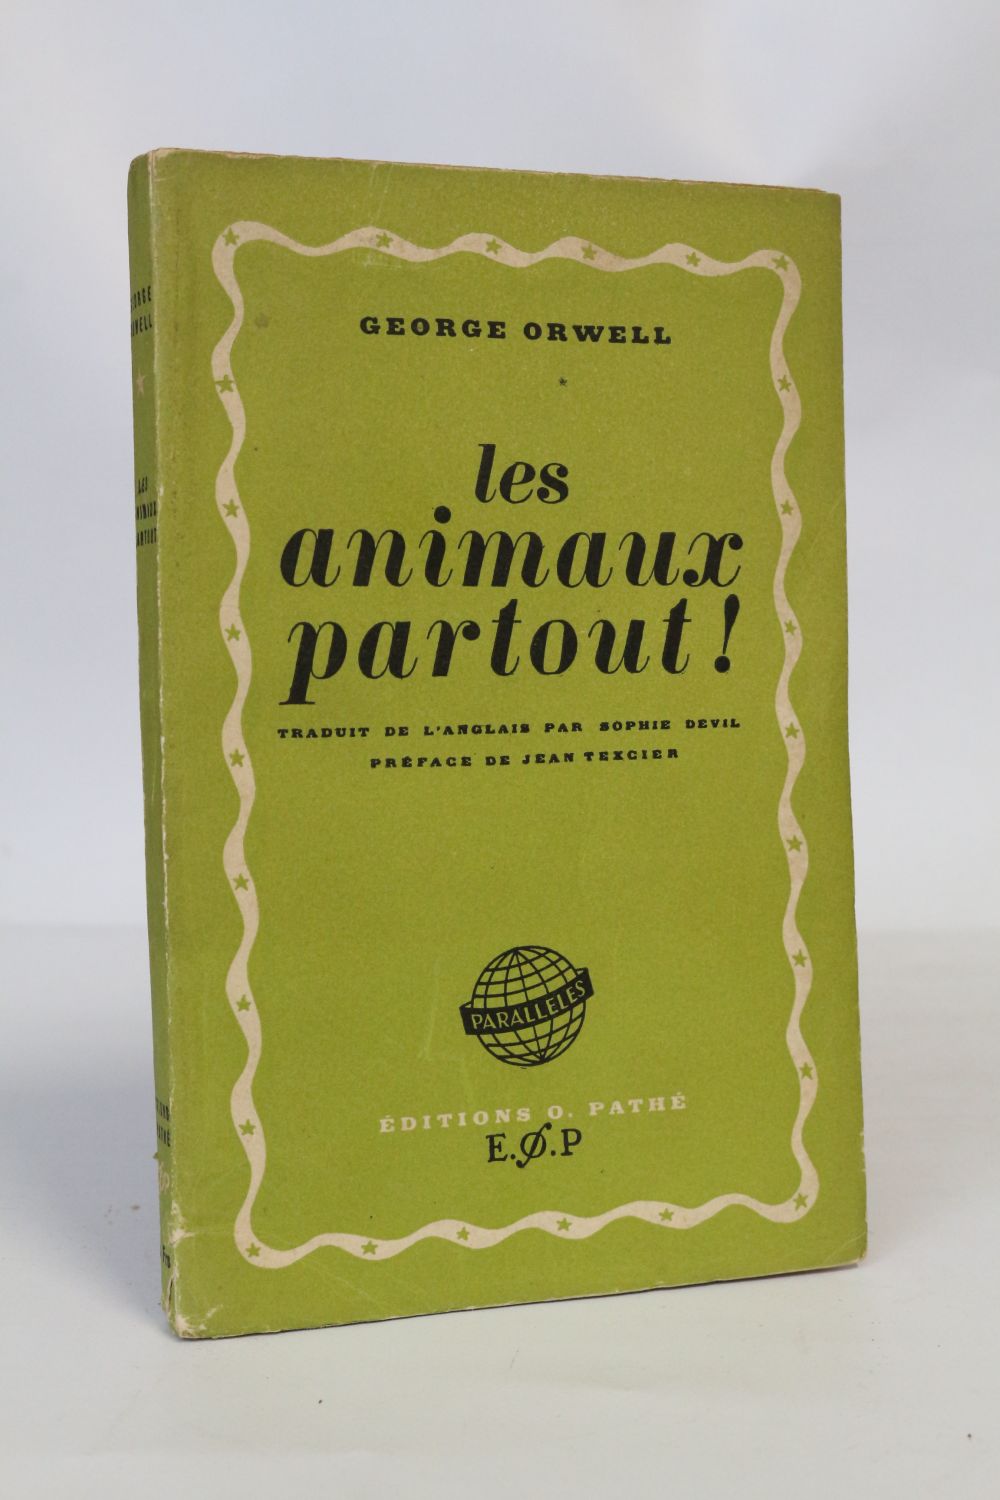 La Ferme des animaux - Livre de George Orwell